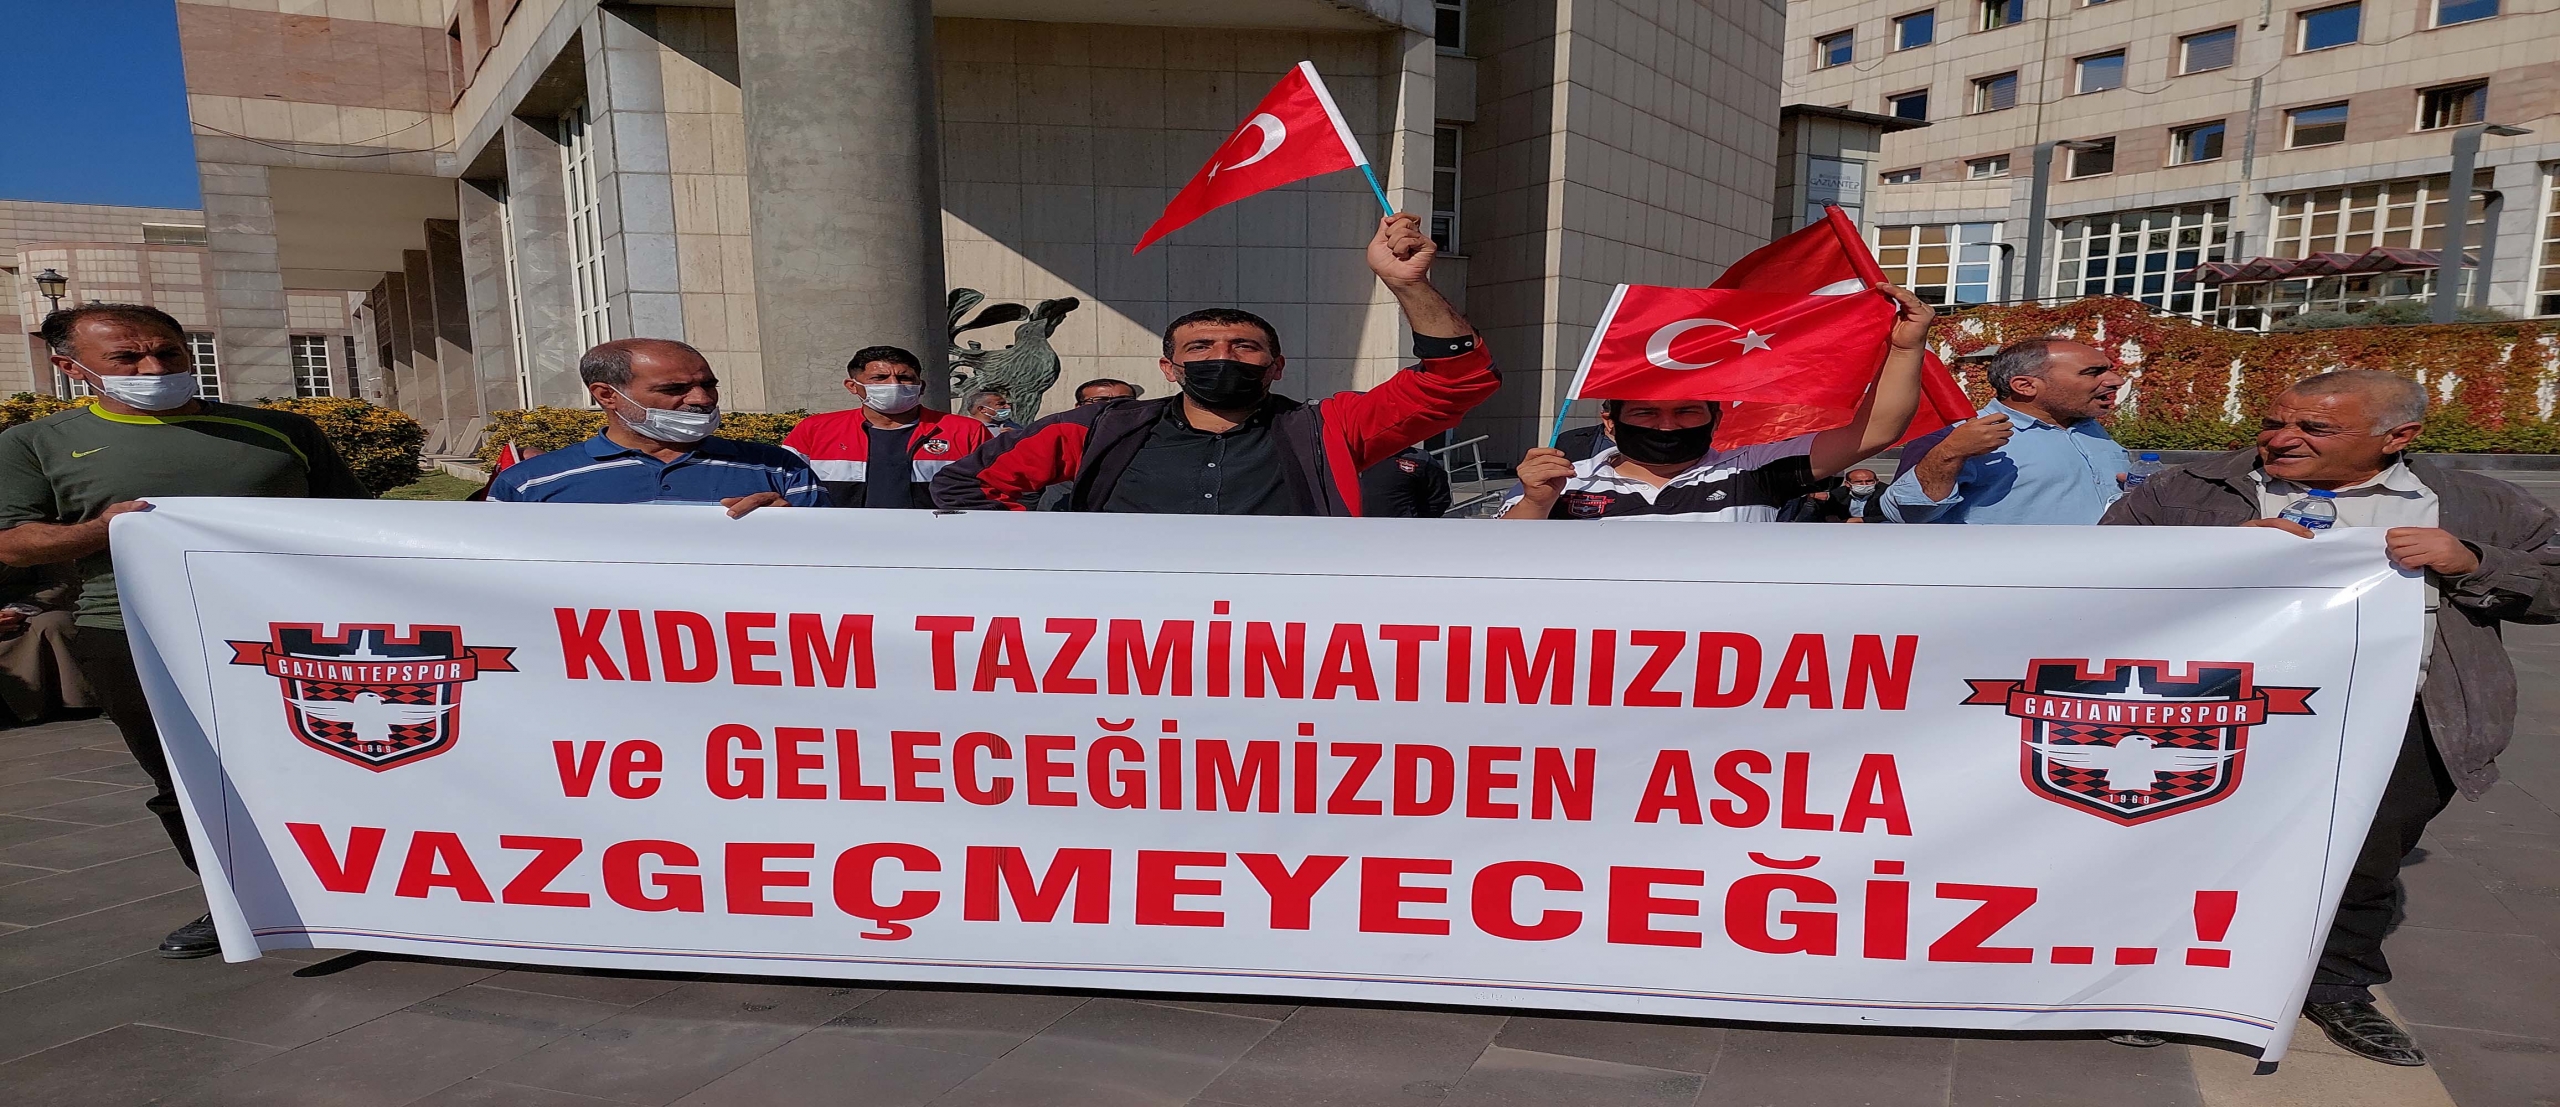 Gaziantepspor mağdurları: O milletvekillerini  zor işleri çözsünler diye seçtik